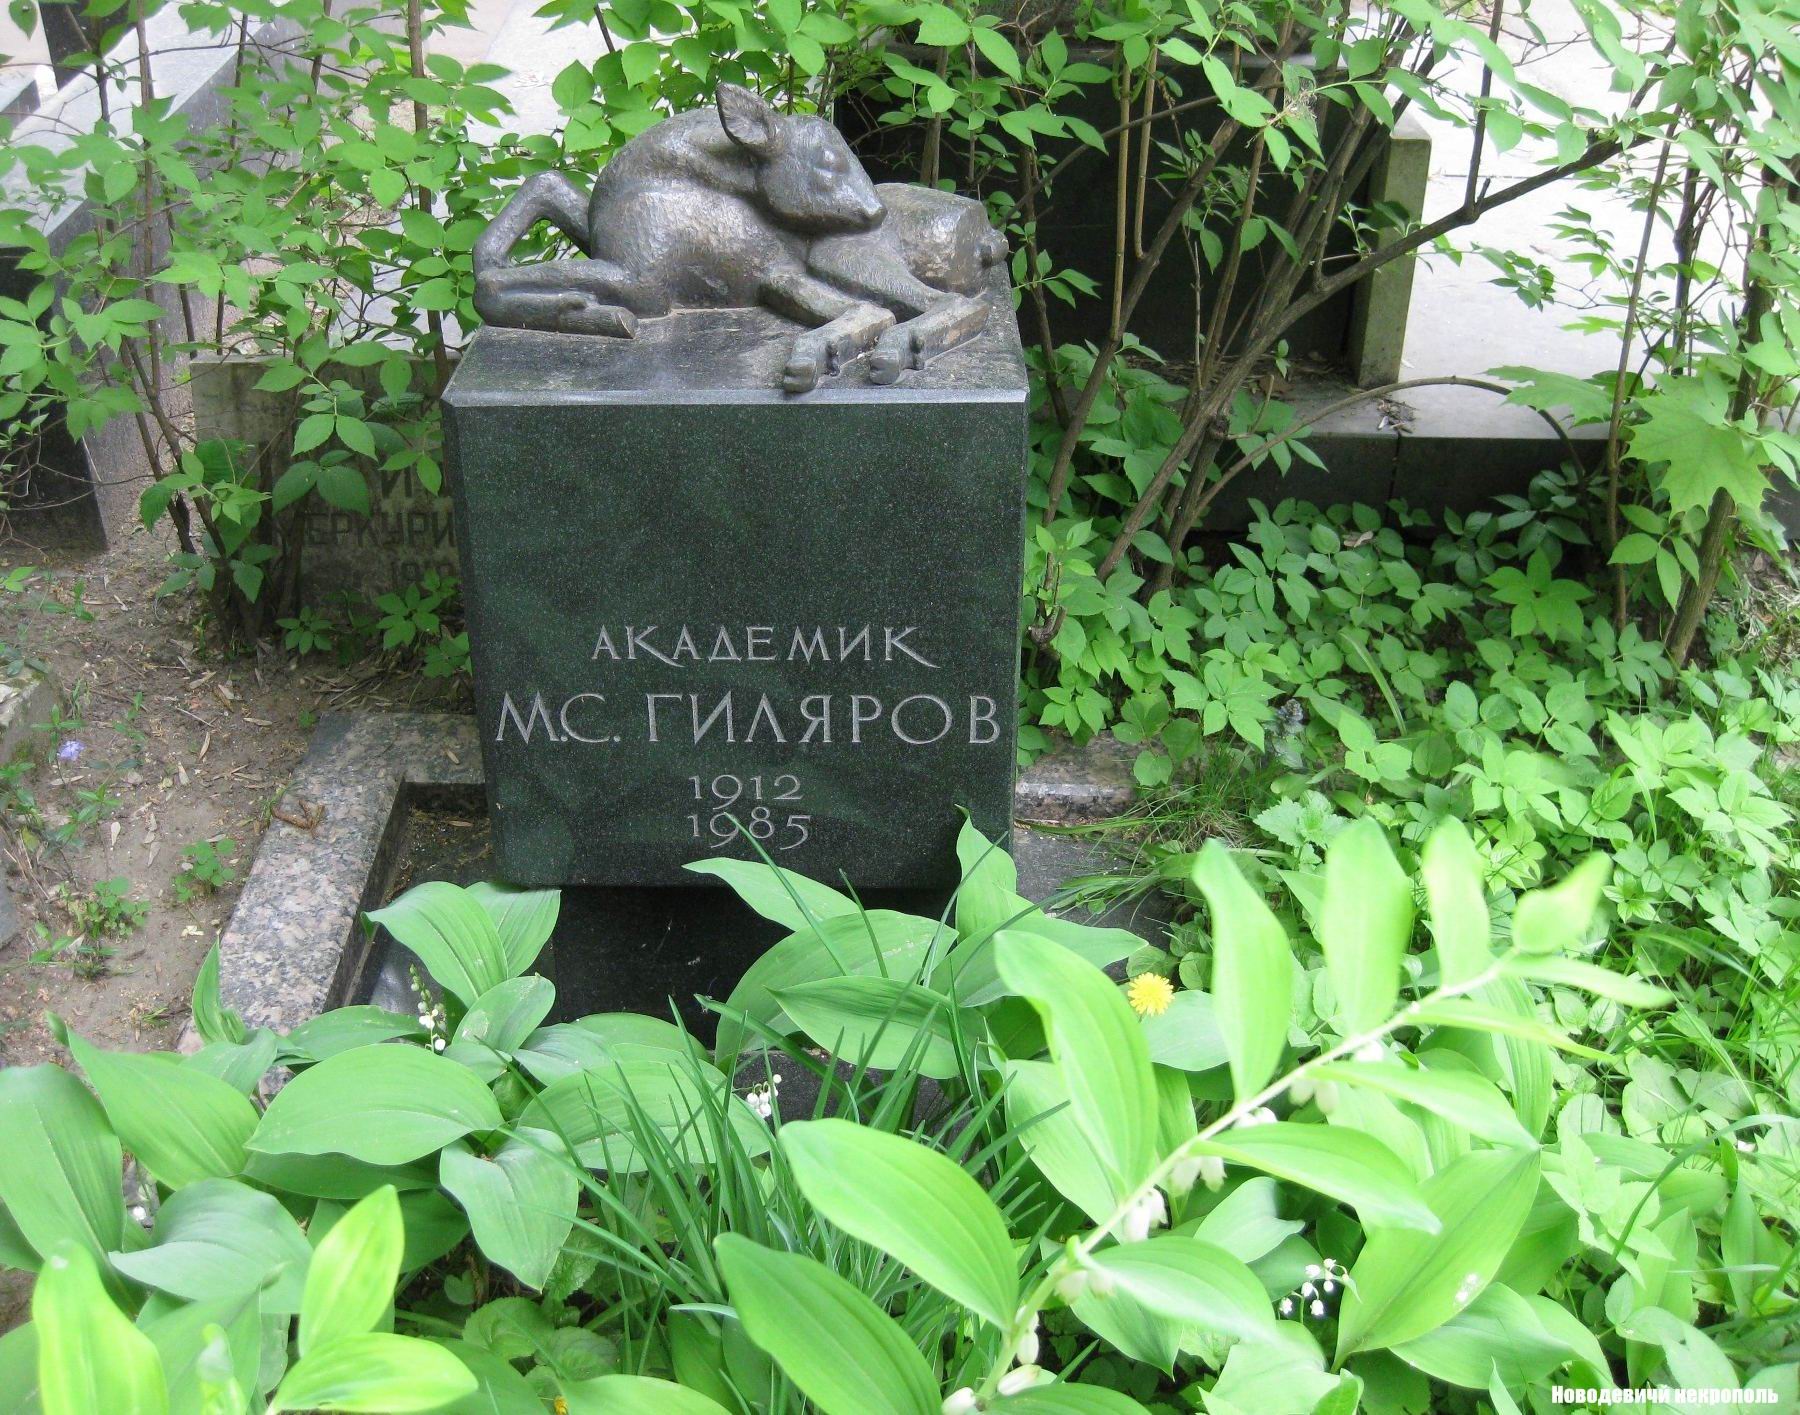 Памятник на могиле Гилярова М.С. (1912-1985), ск. В.Смирин, арх. И.Студенкин, на Новодевичьем кладбище (10-3-1).